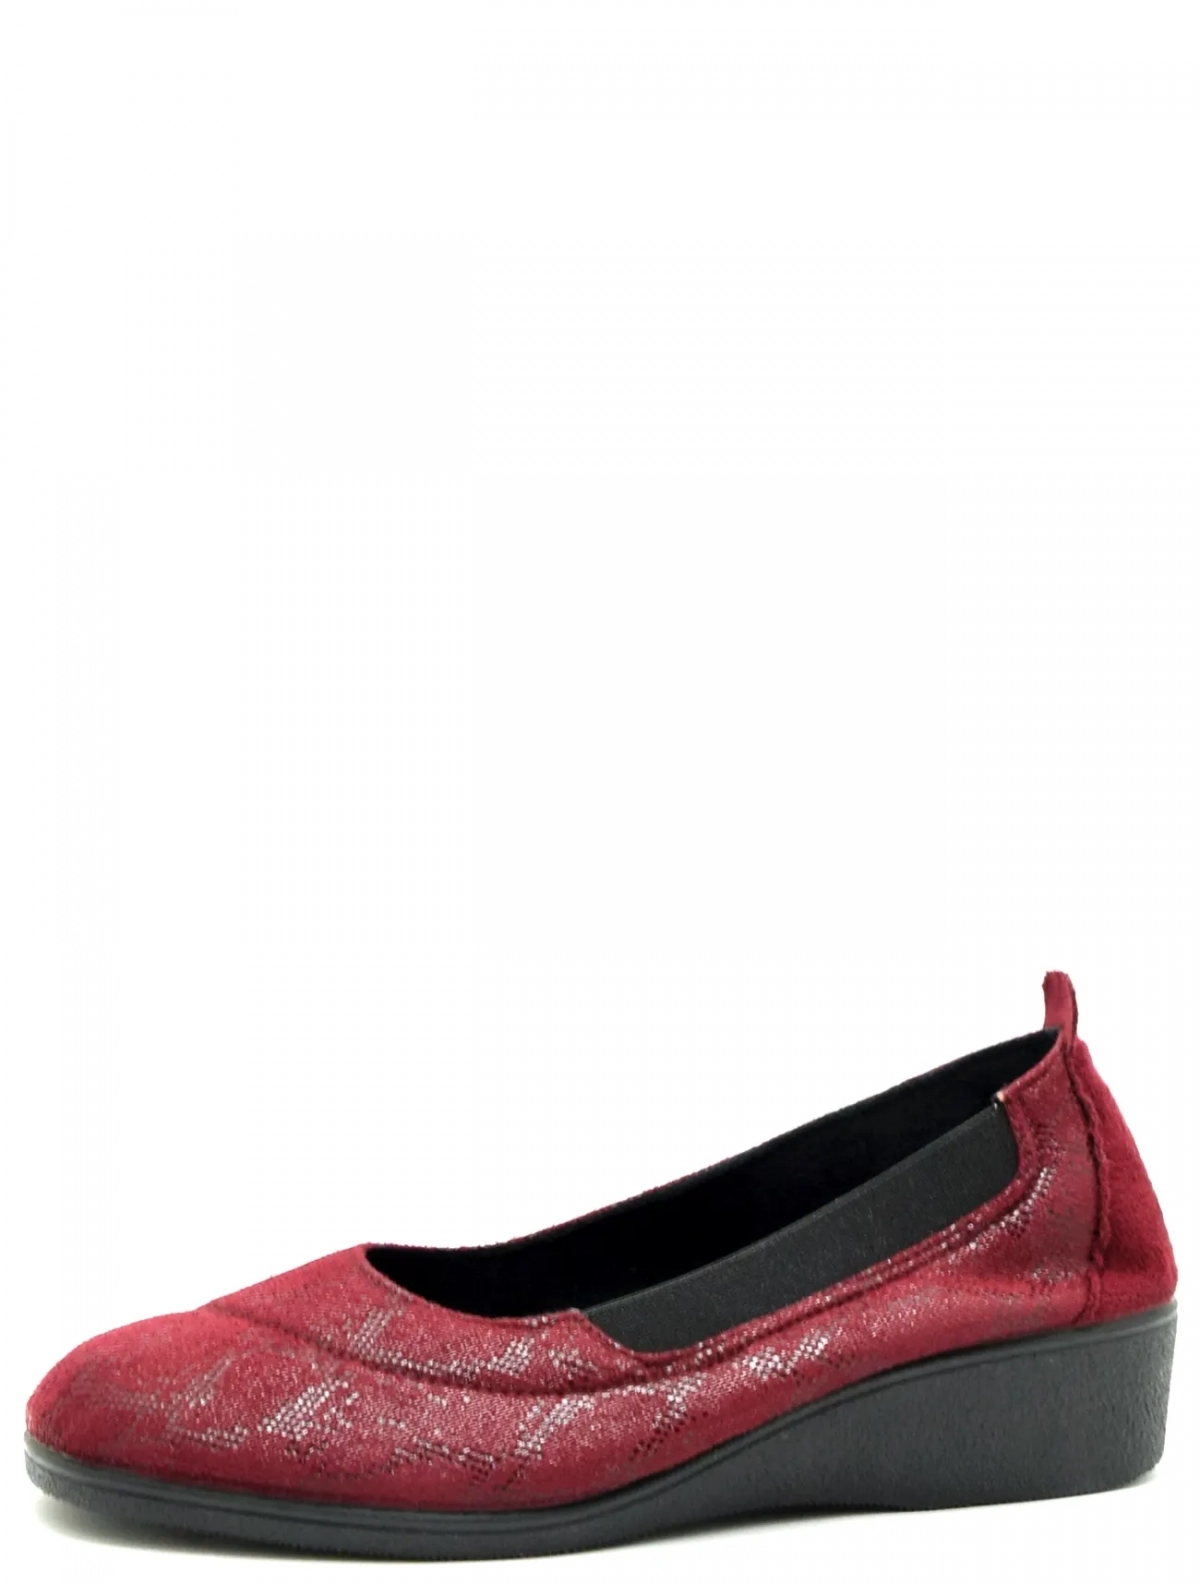 Imara Moda 183-A212-549 женские туфли